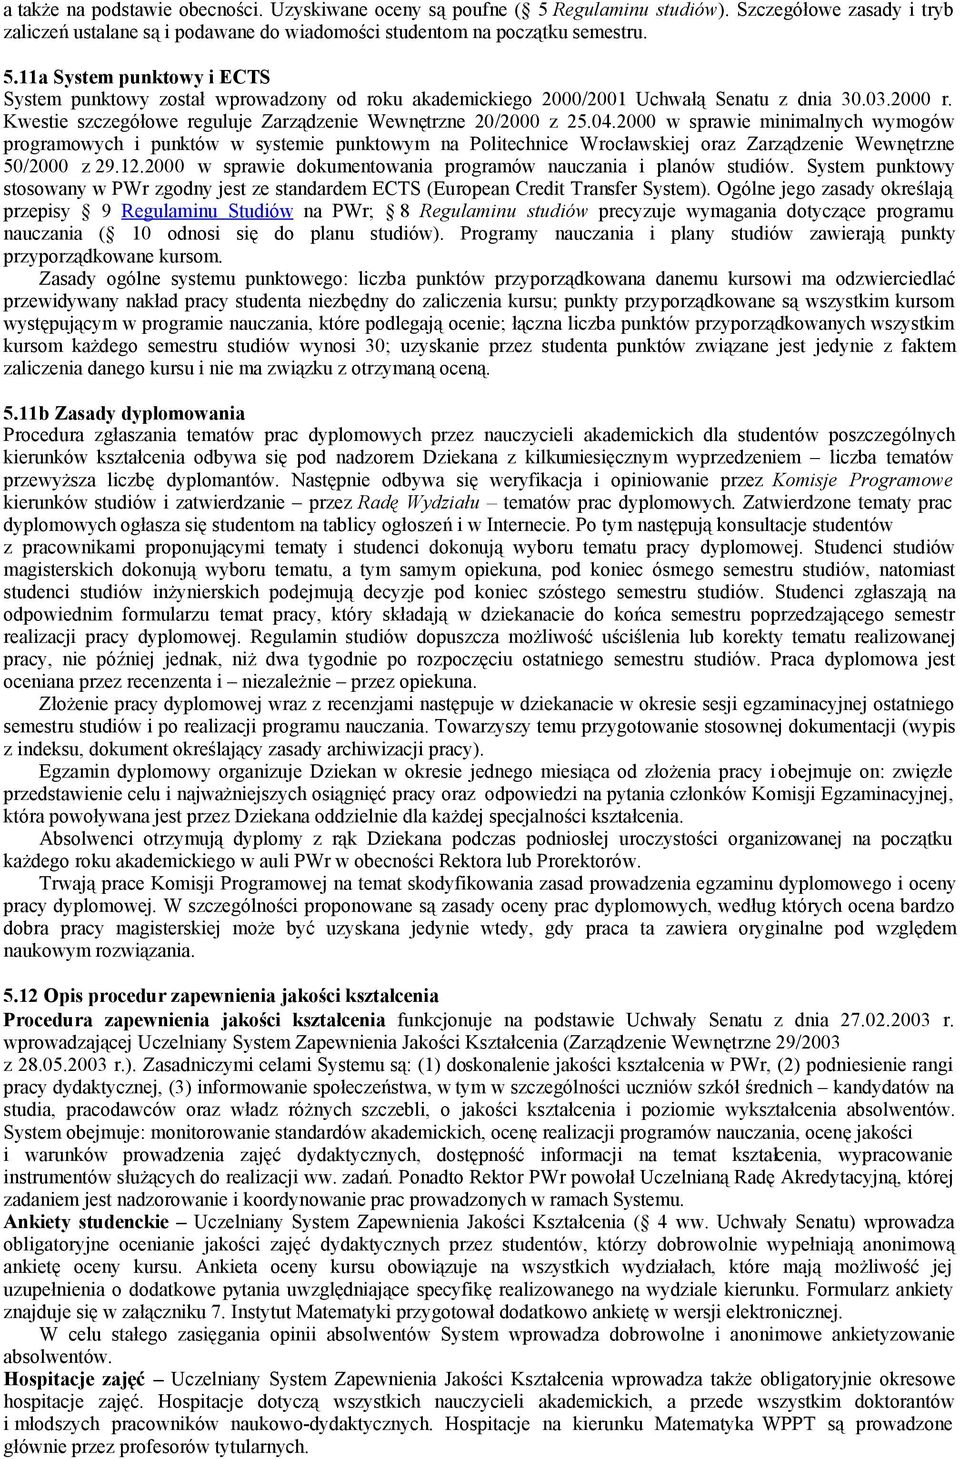 2000 w sprawie minimalnych wymogów programowych i punktów w systemie punktowym na Politechnice Wrocławskiej oraz Zarządzenie Wewnętrzne 50/2000 z 29.12.